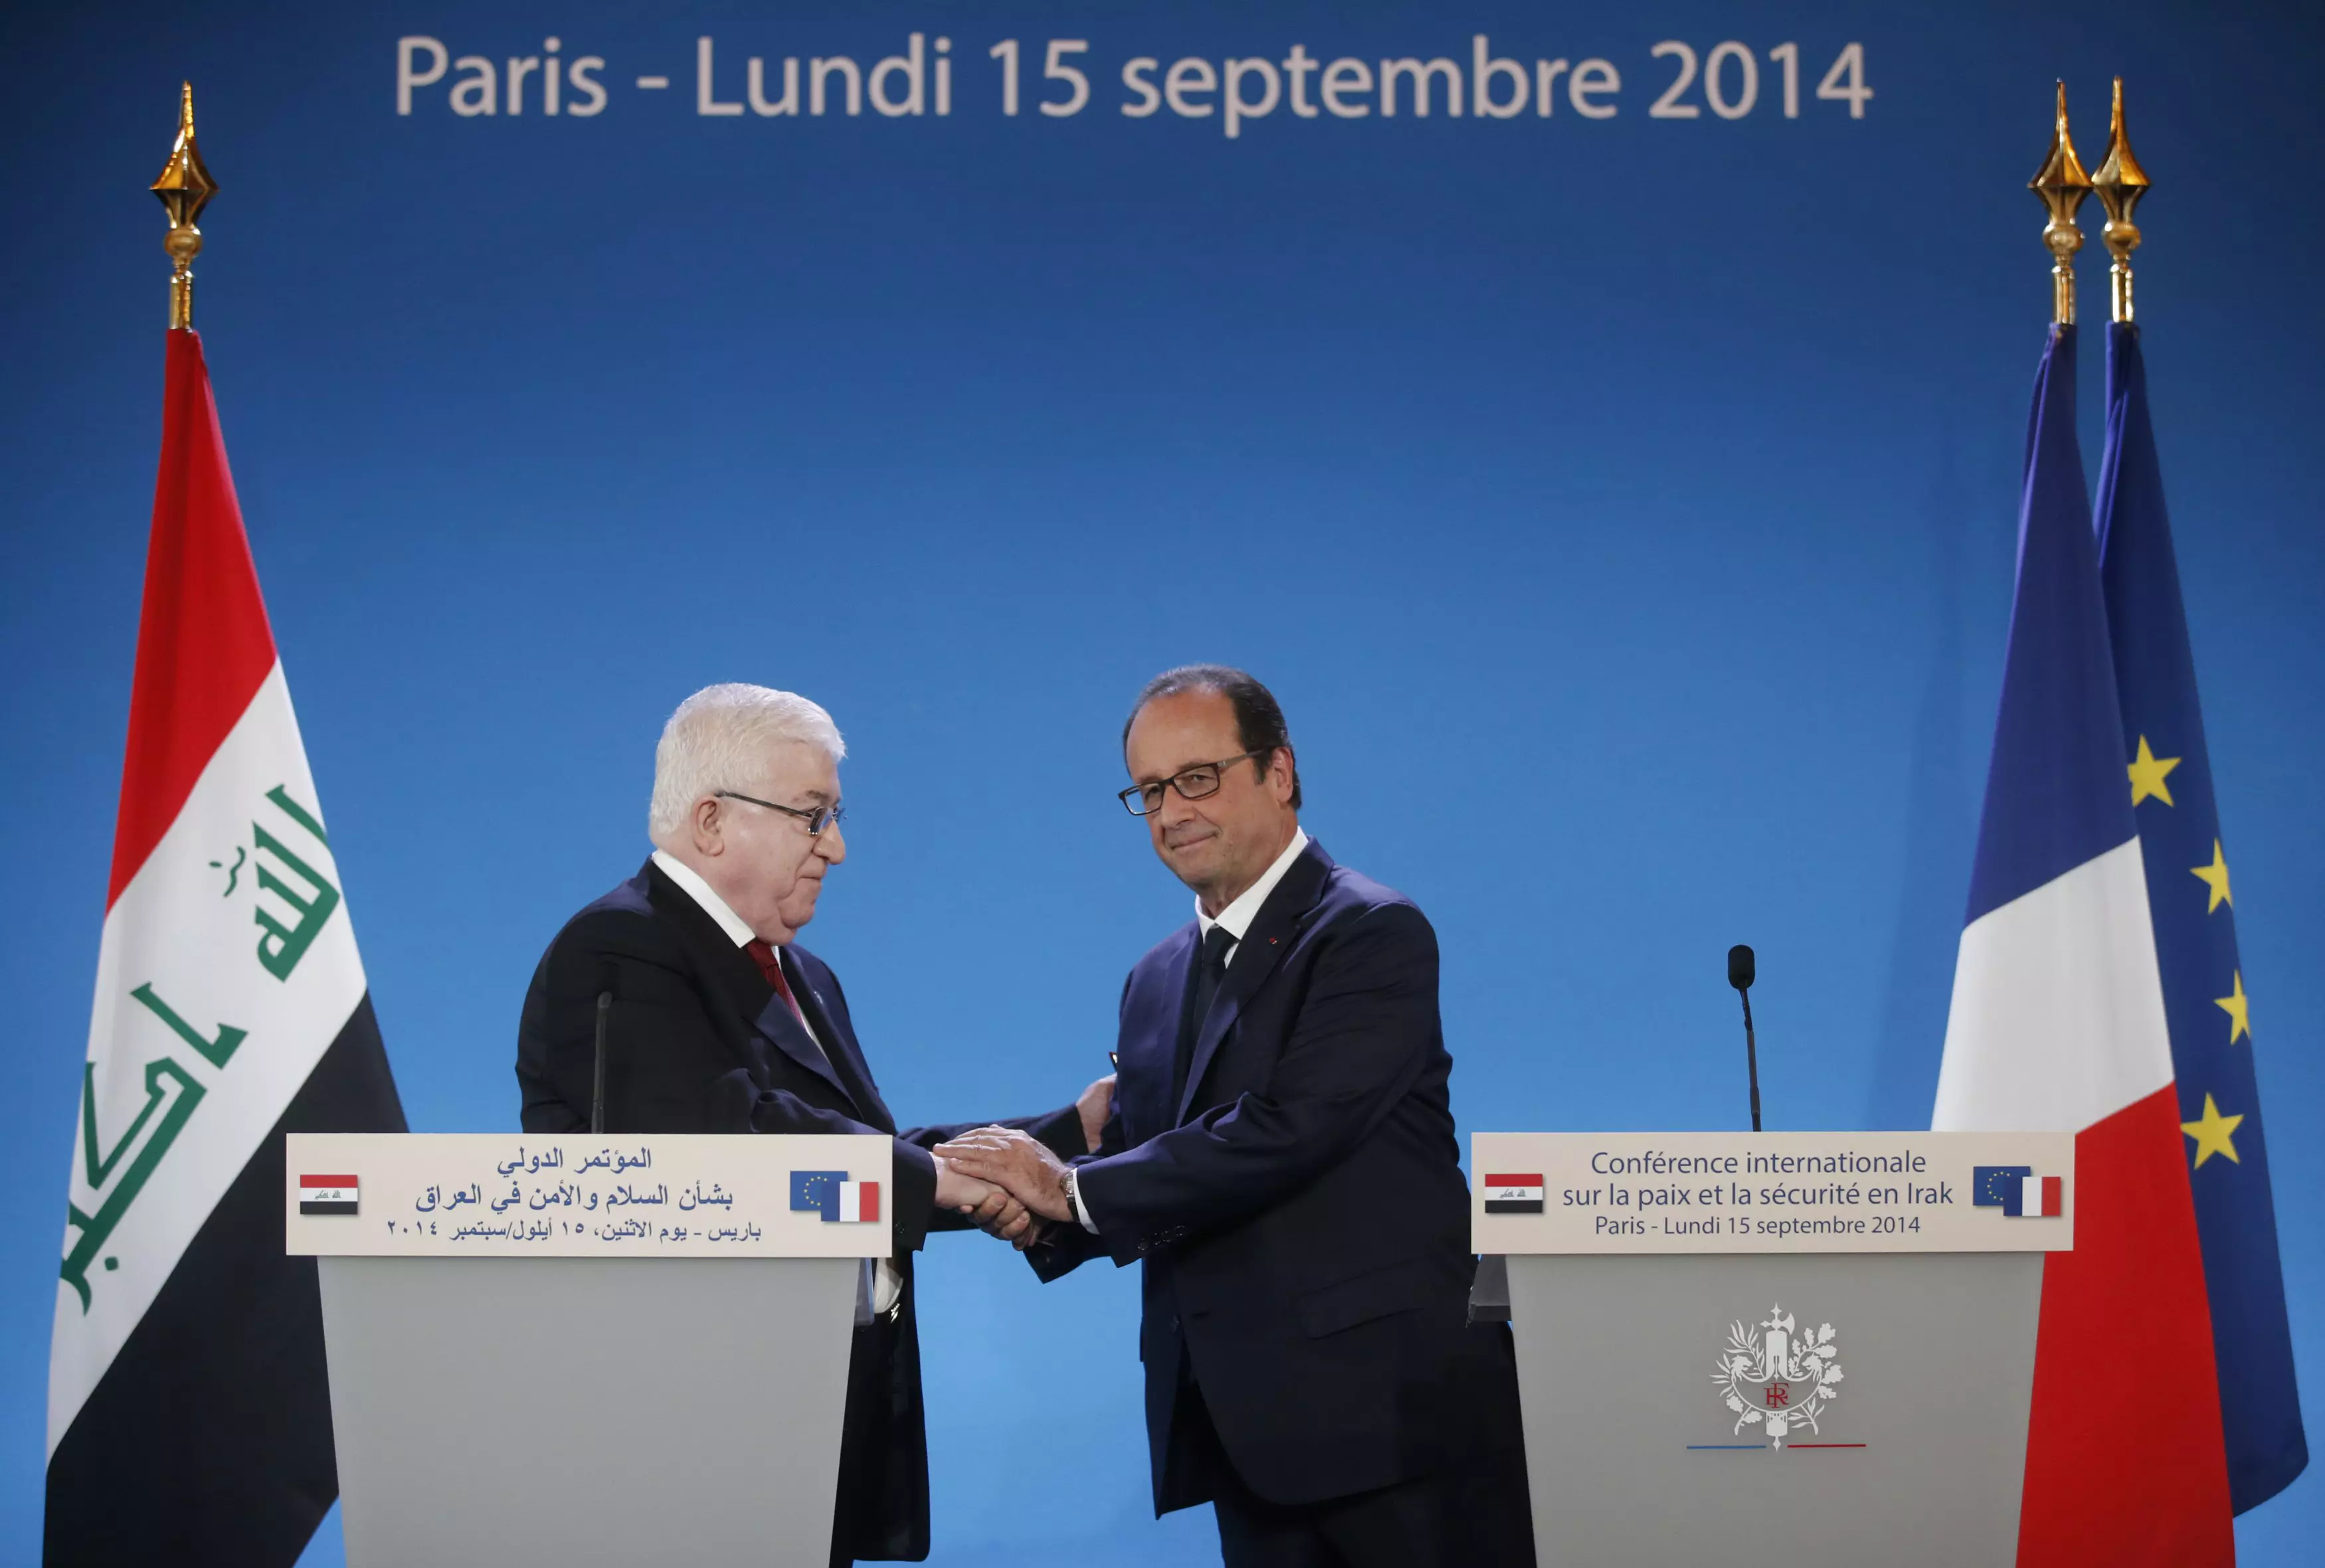 נשיא צרפת פרנסואה הולנד ונשיא עיראק פואד מעסום בוועידה בנושא המלחמה בדאעש, השבוע